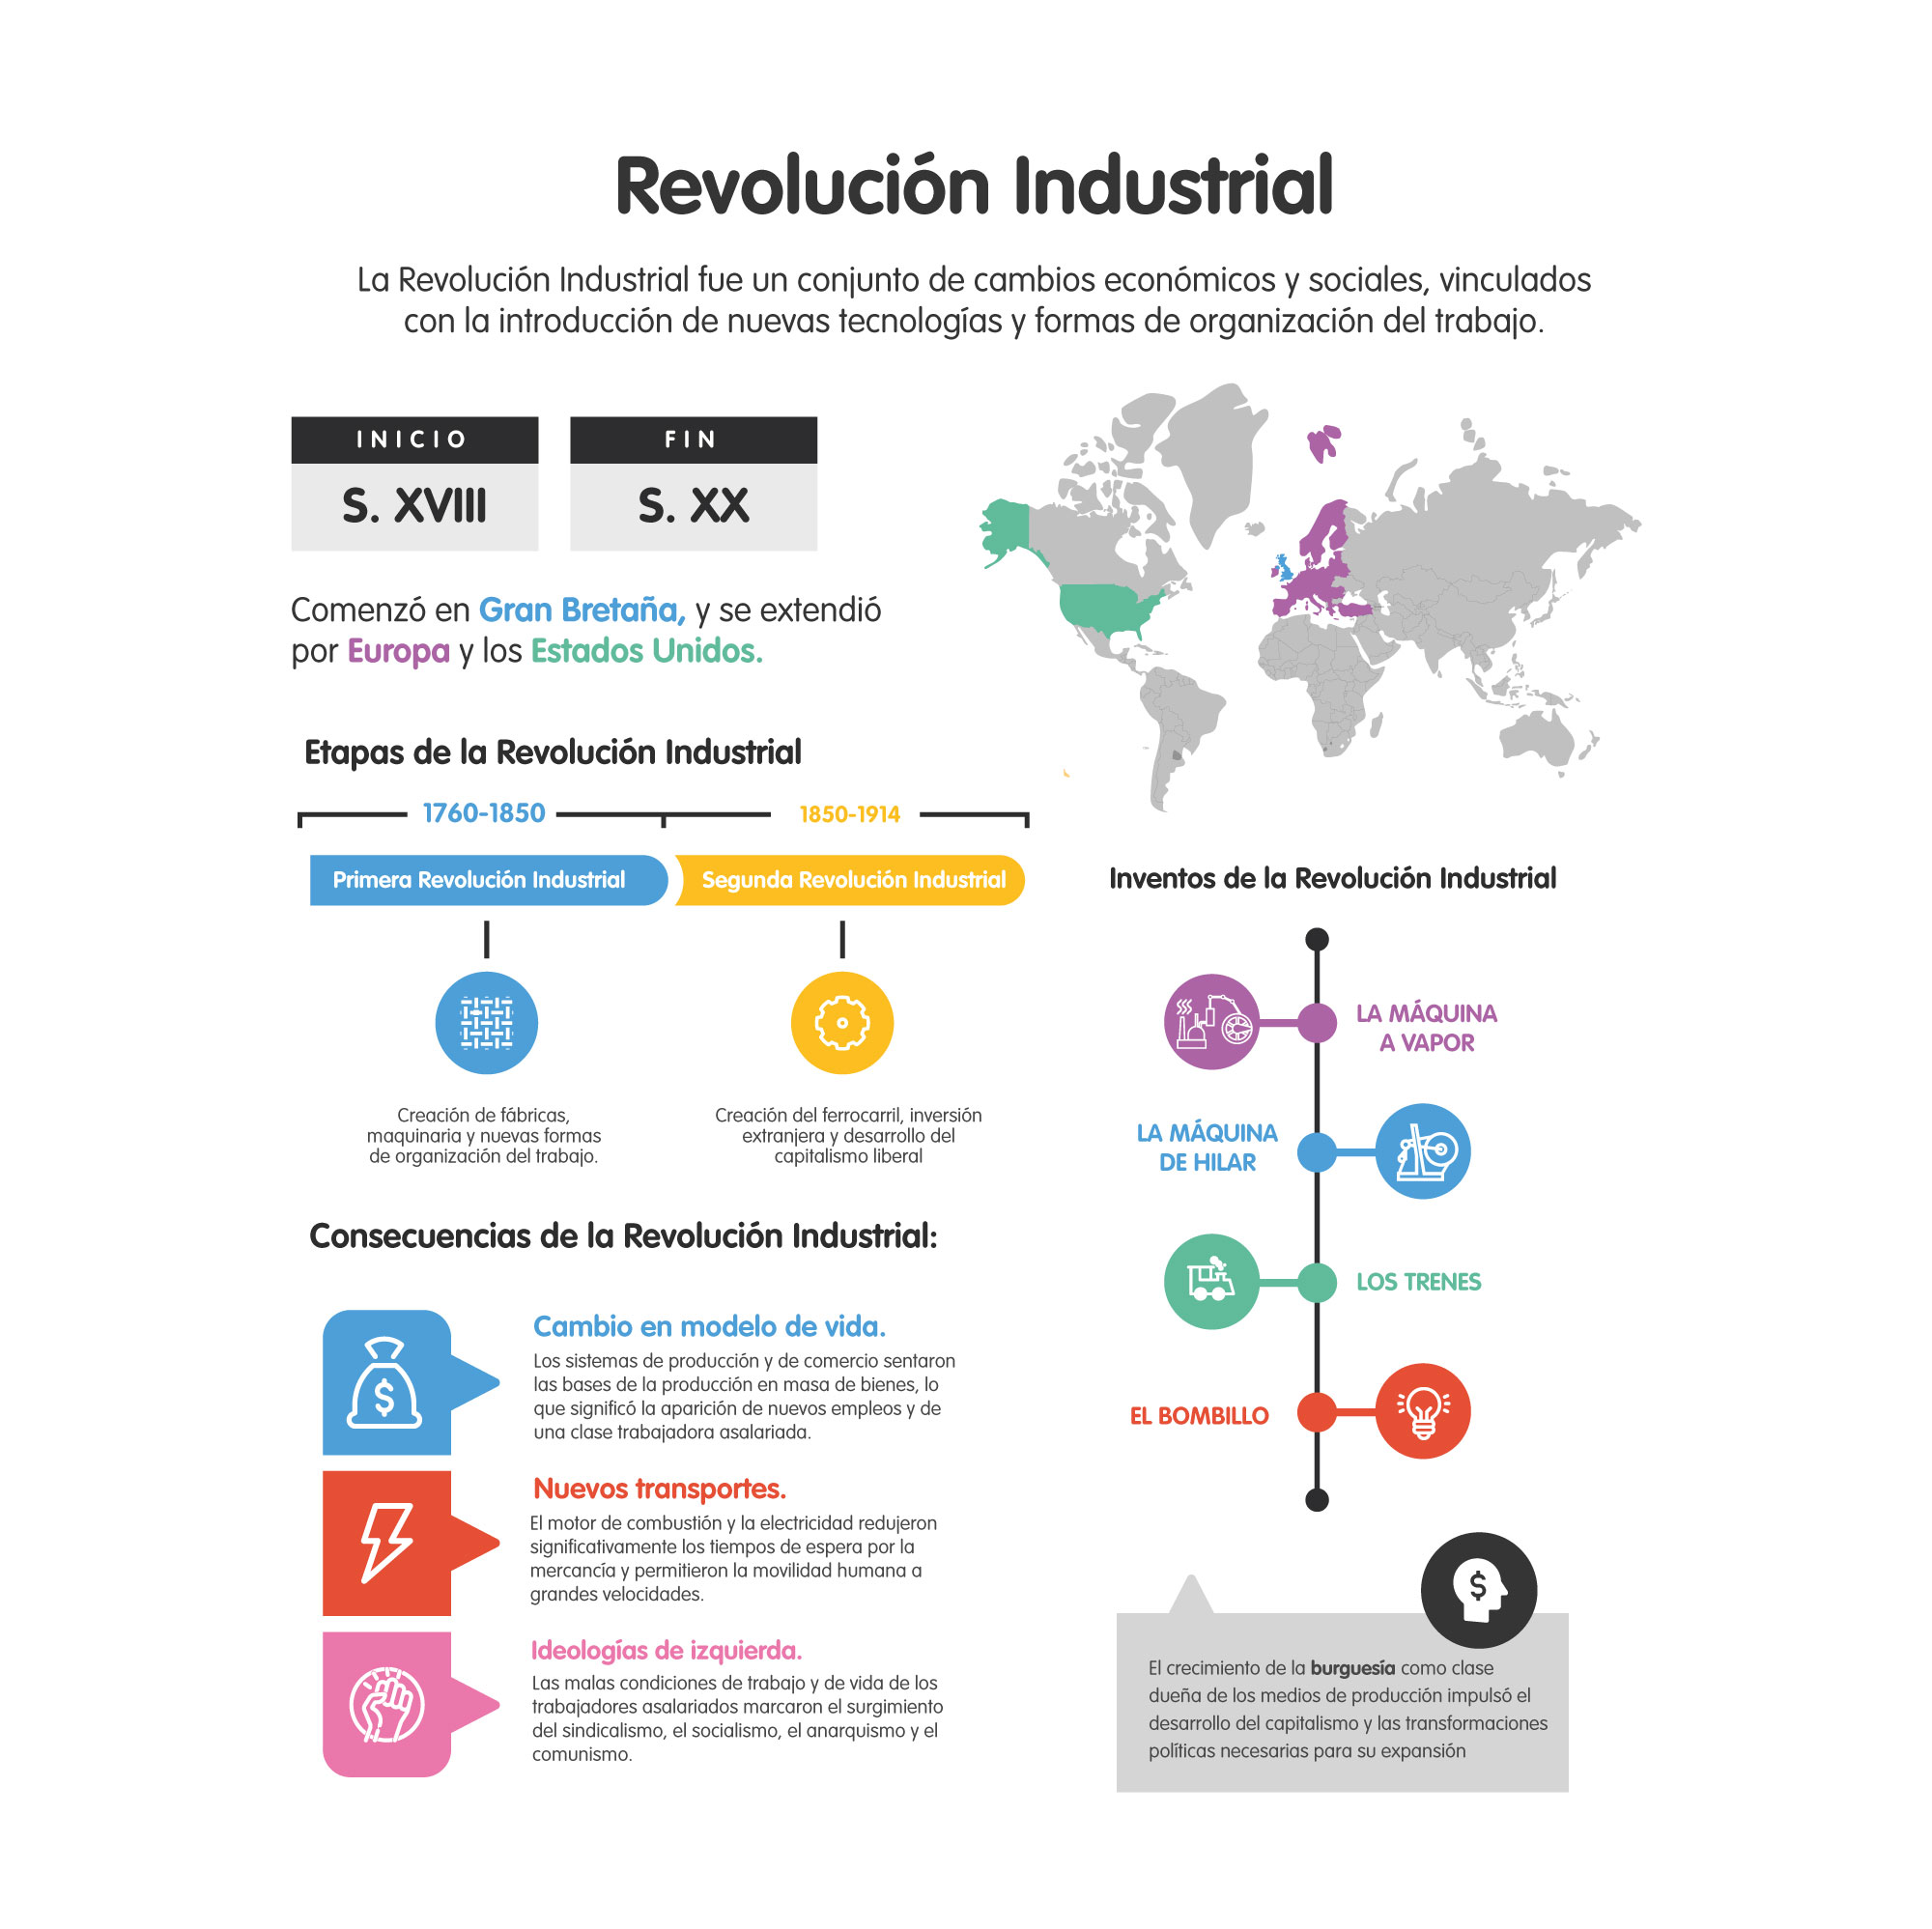 Revolución Industrial - Resumen, causas y consecuencias